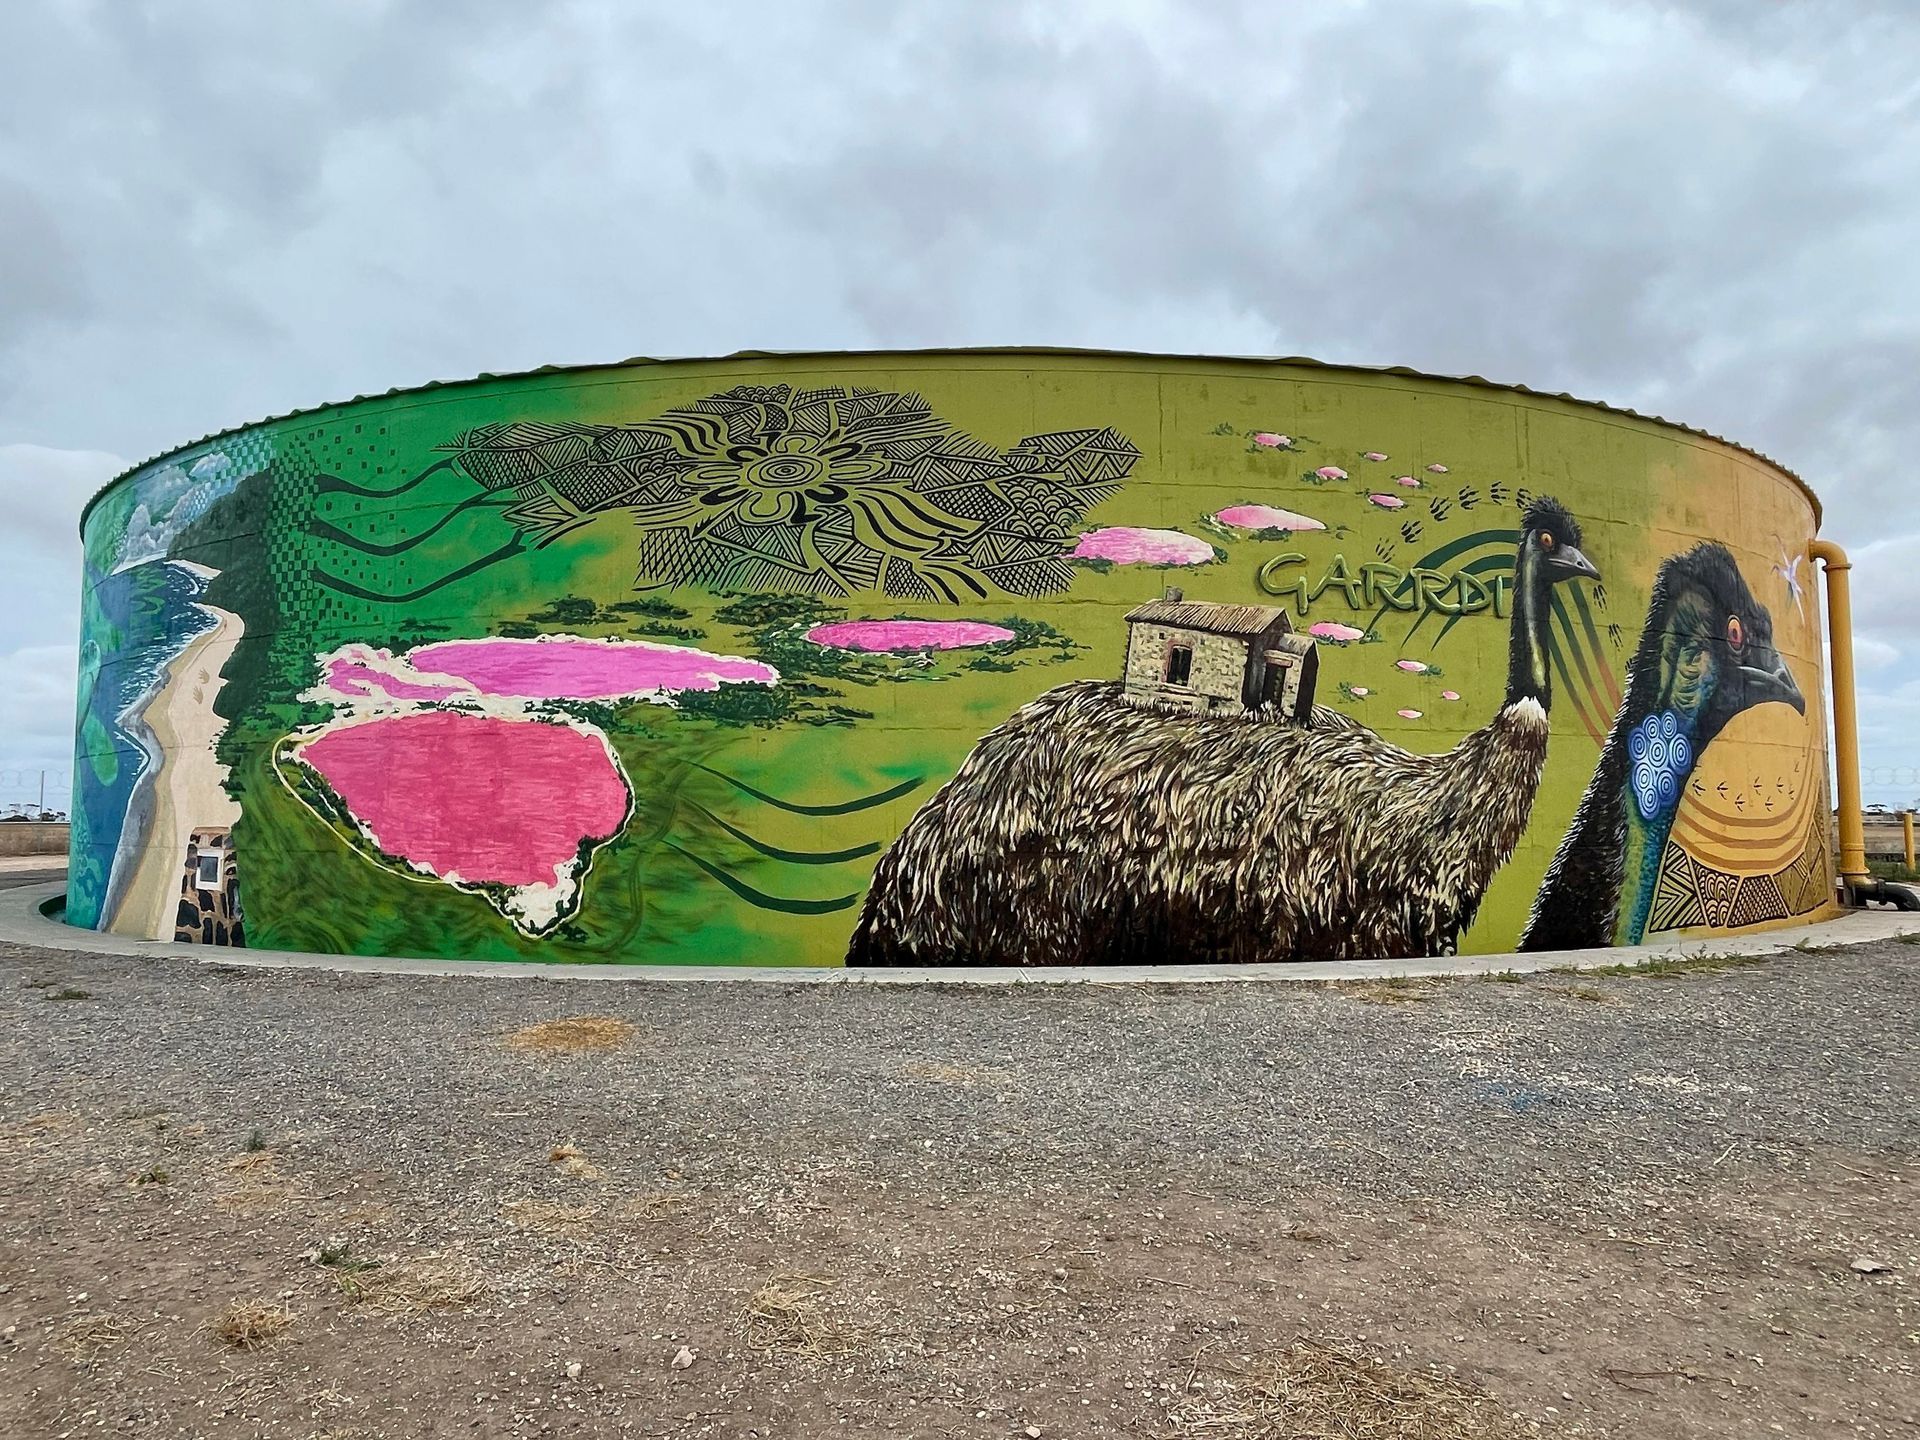 Port Moorowie Water Tank Art, Australian Silo Art trail